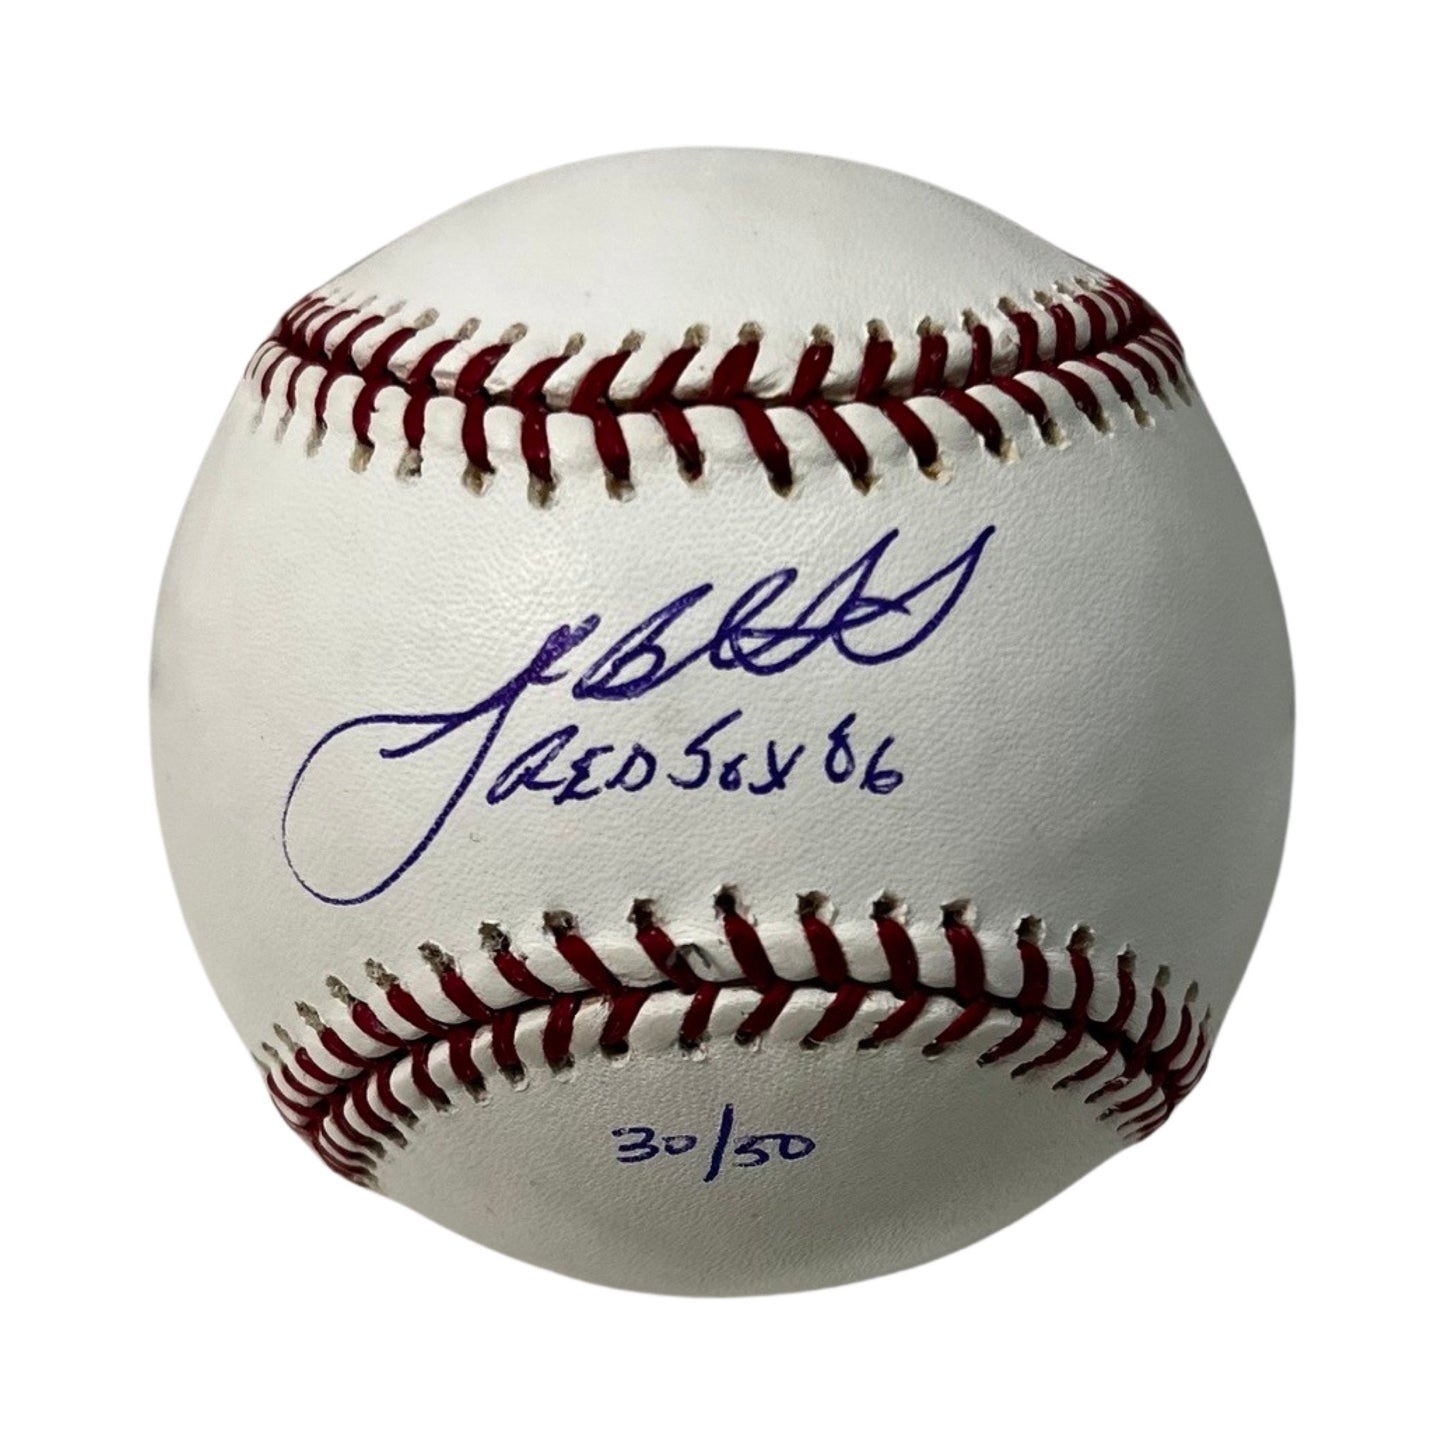 Josh Beckett Autographed Boston Red Sox OMLB "Red Sox 06" Inscription JSA